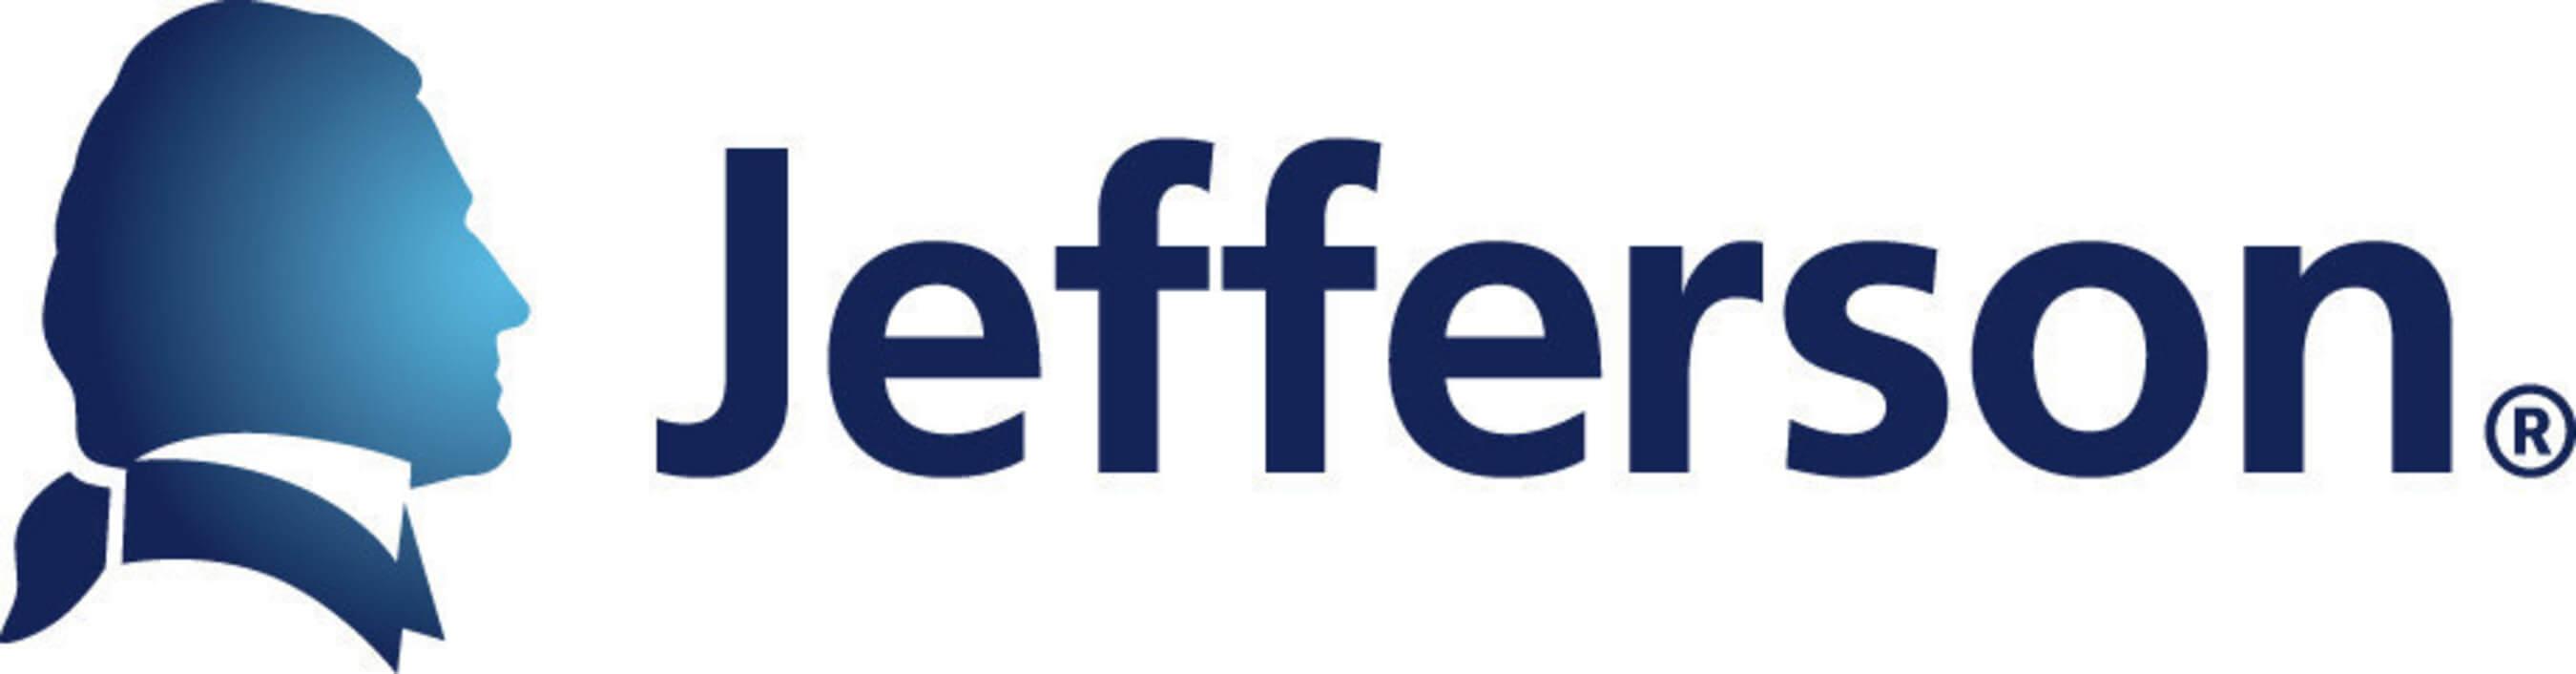 Jefferson Logo - Jefferson Logo - AVIA